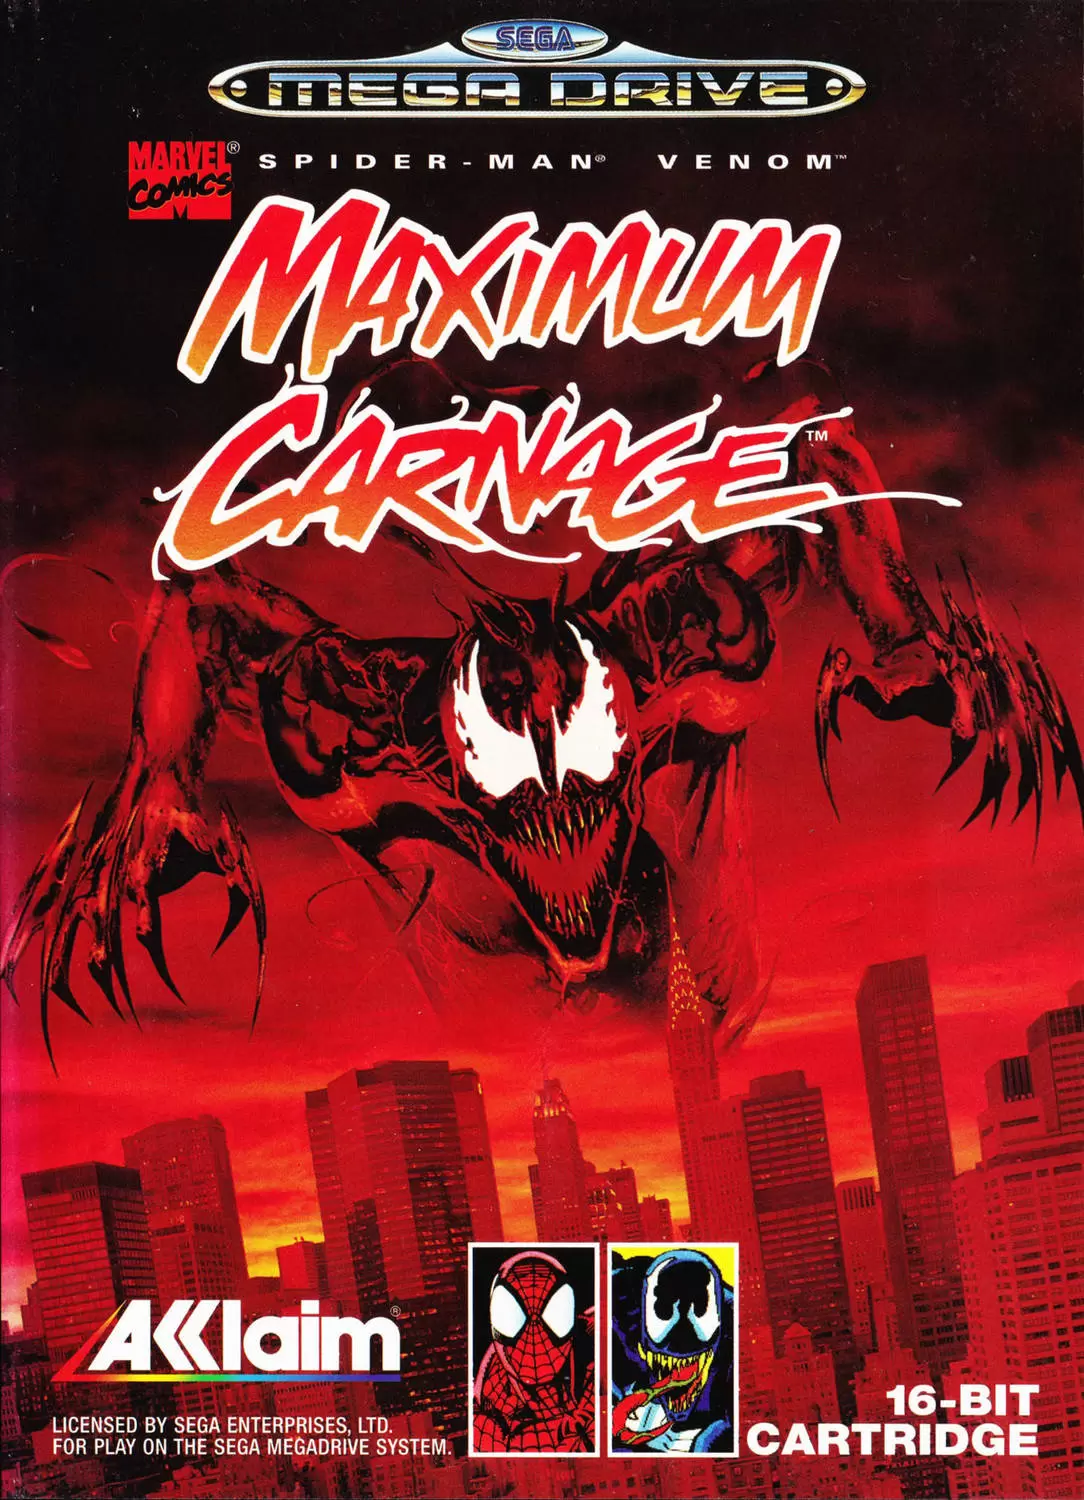 Sega Genesis Games - Spider-Man and Venom: Maximum Carnage